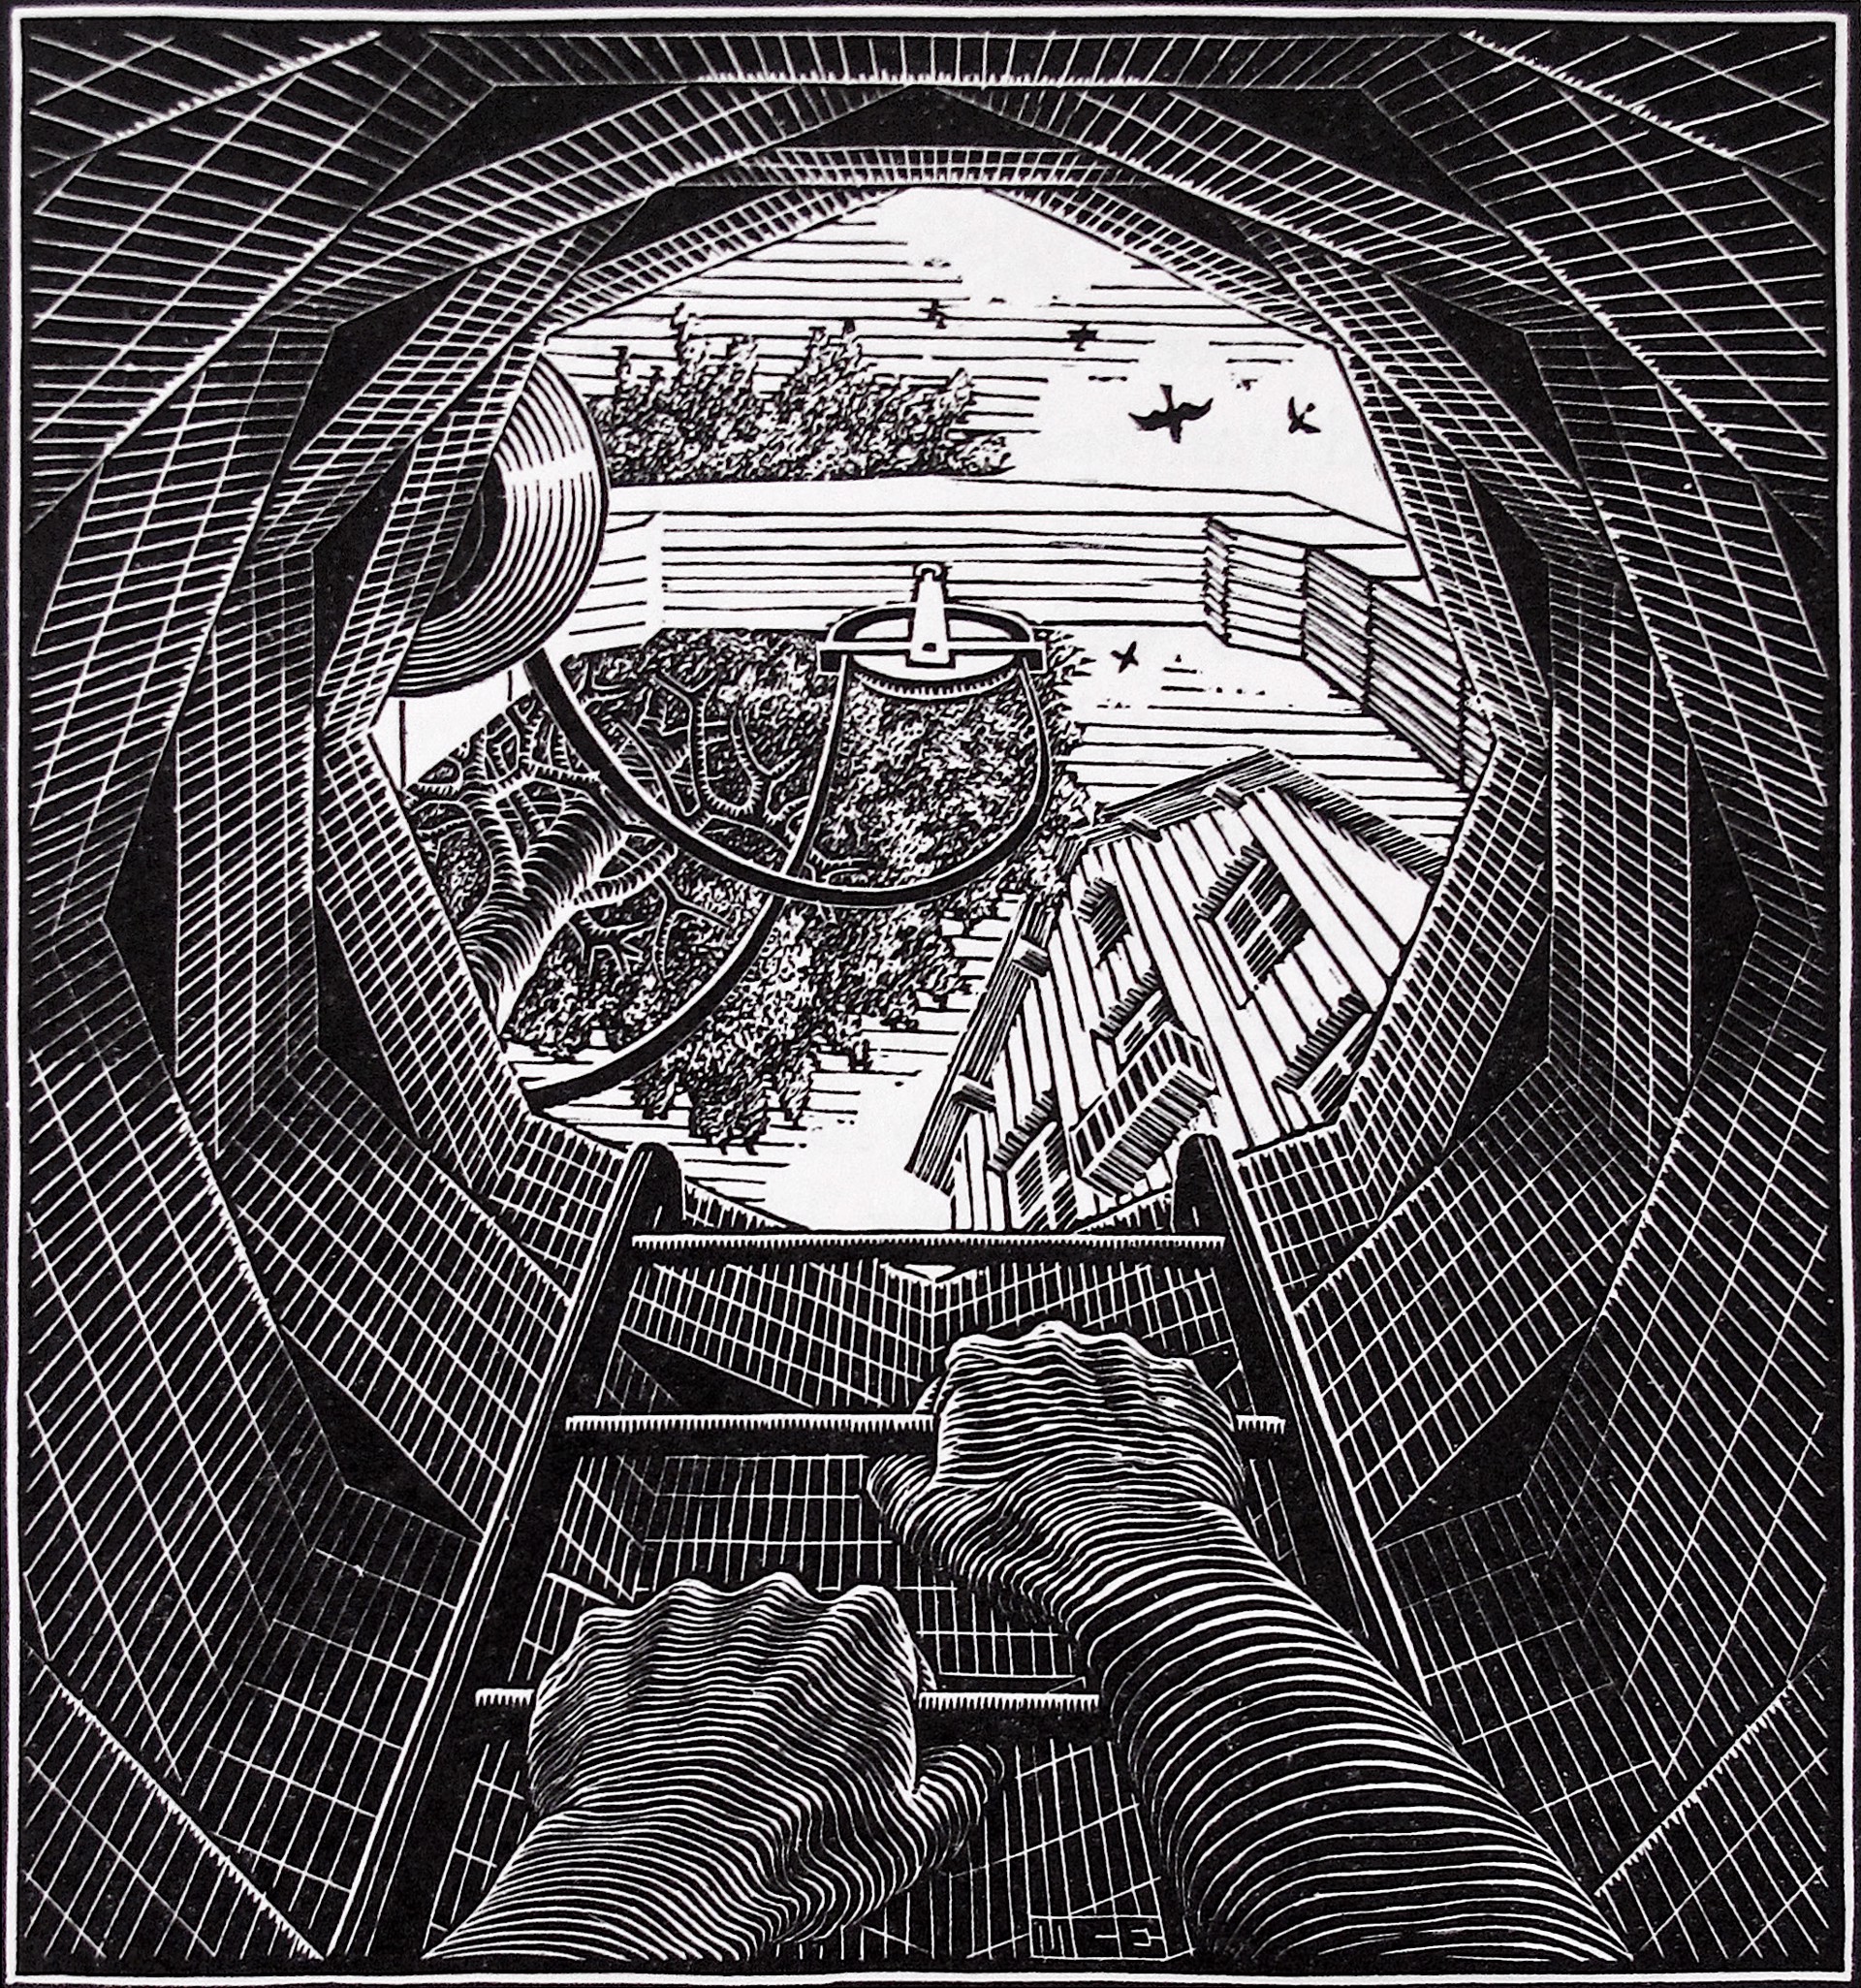 The Well by M.C. Escher